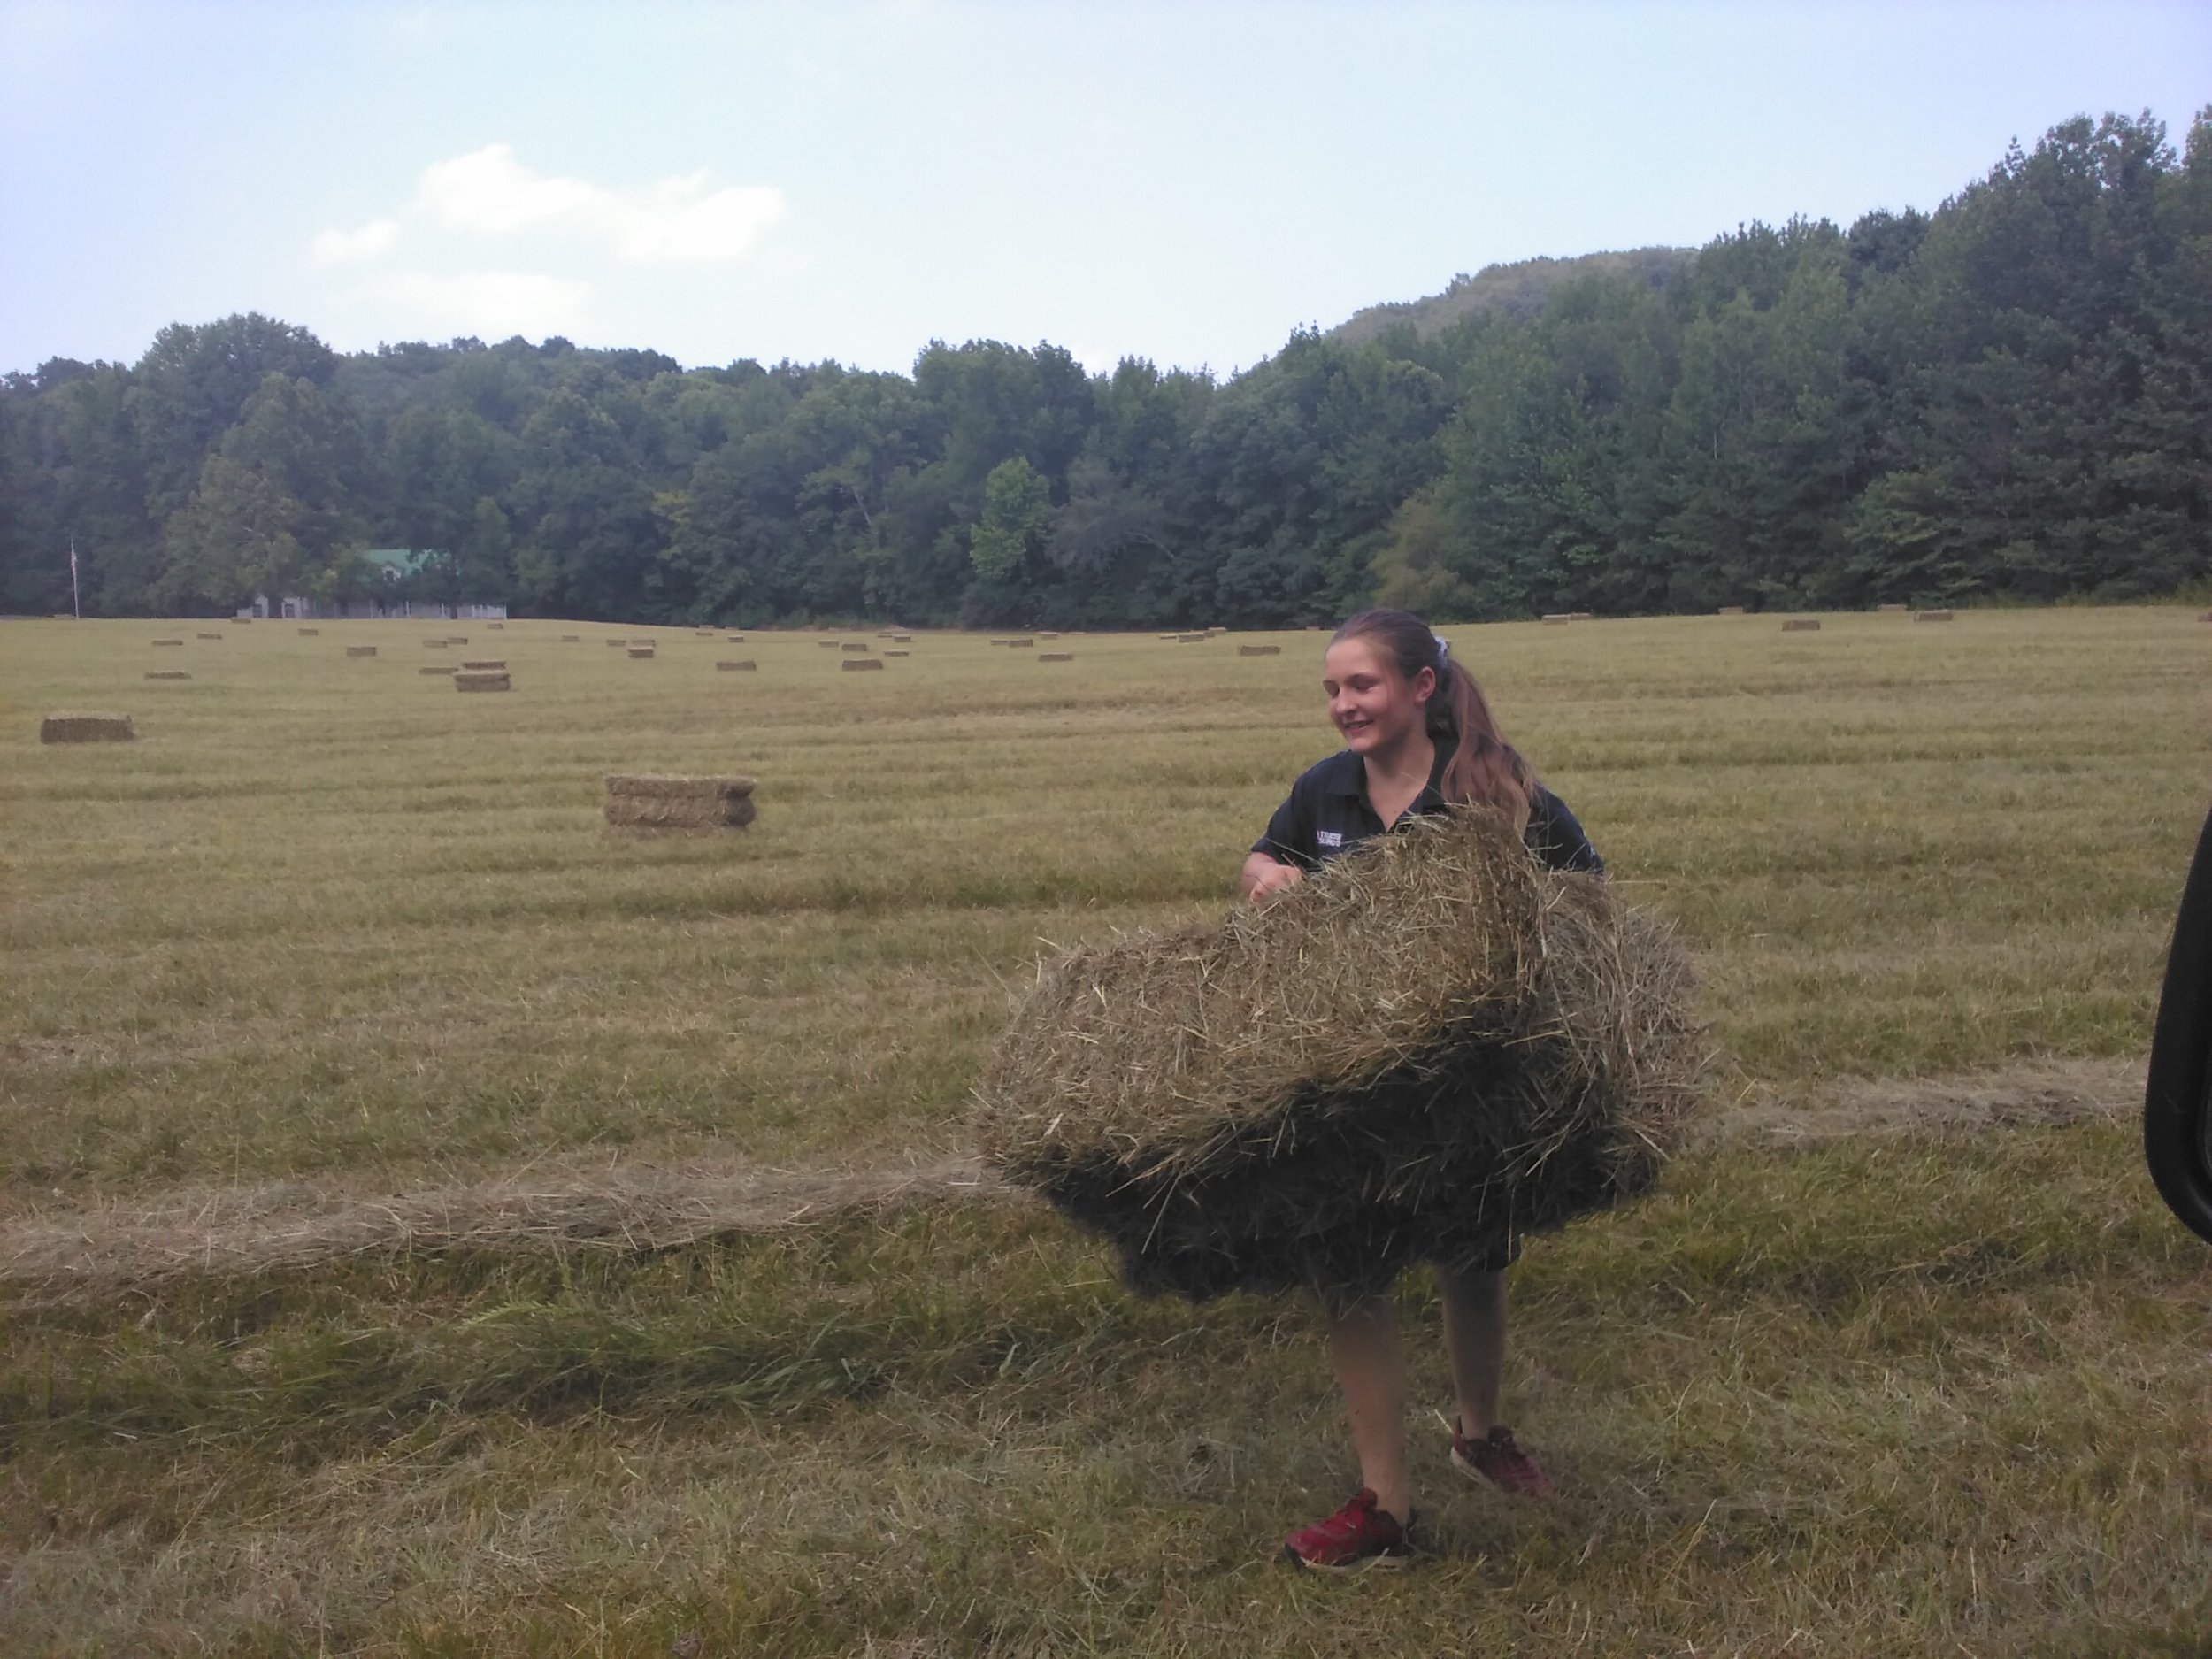 Quick hay pick up.